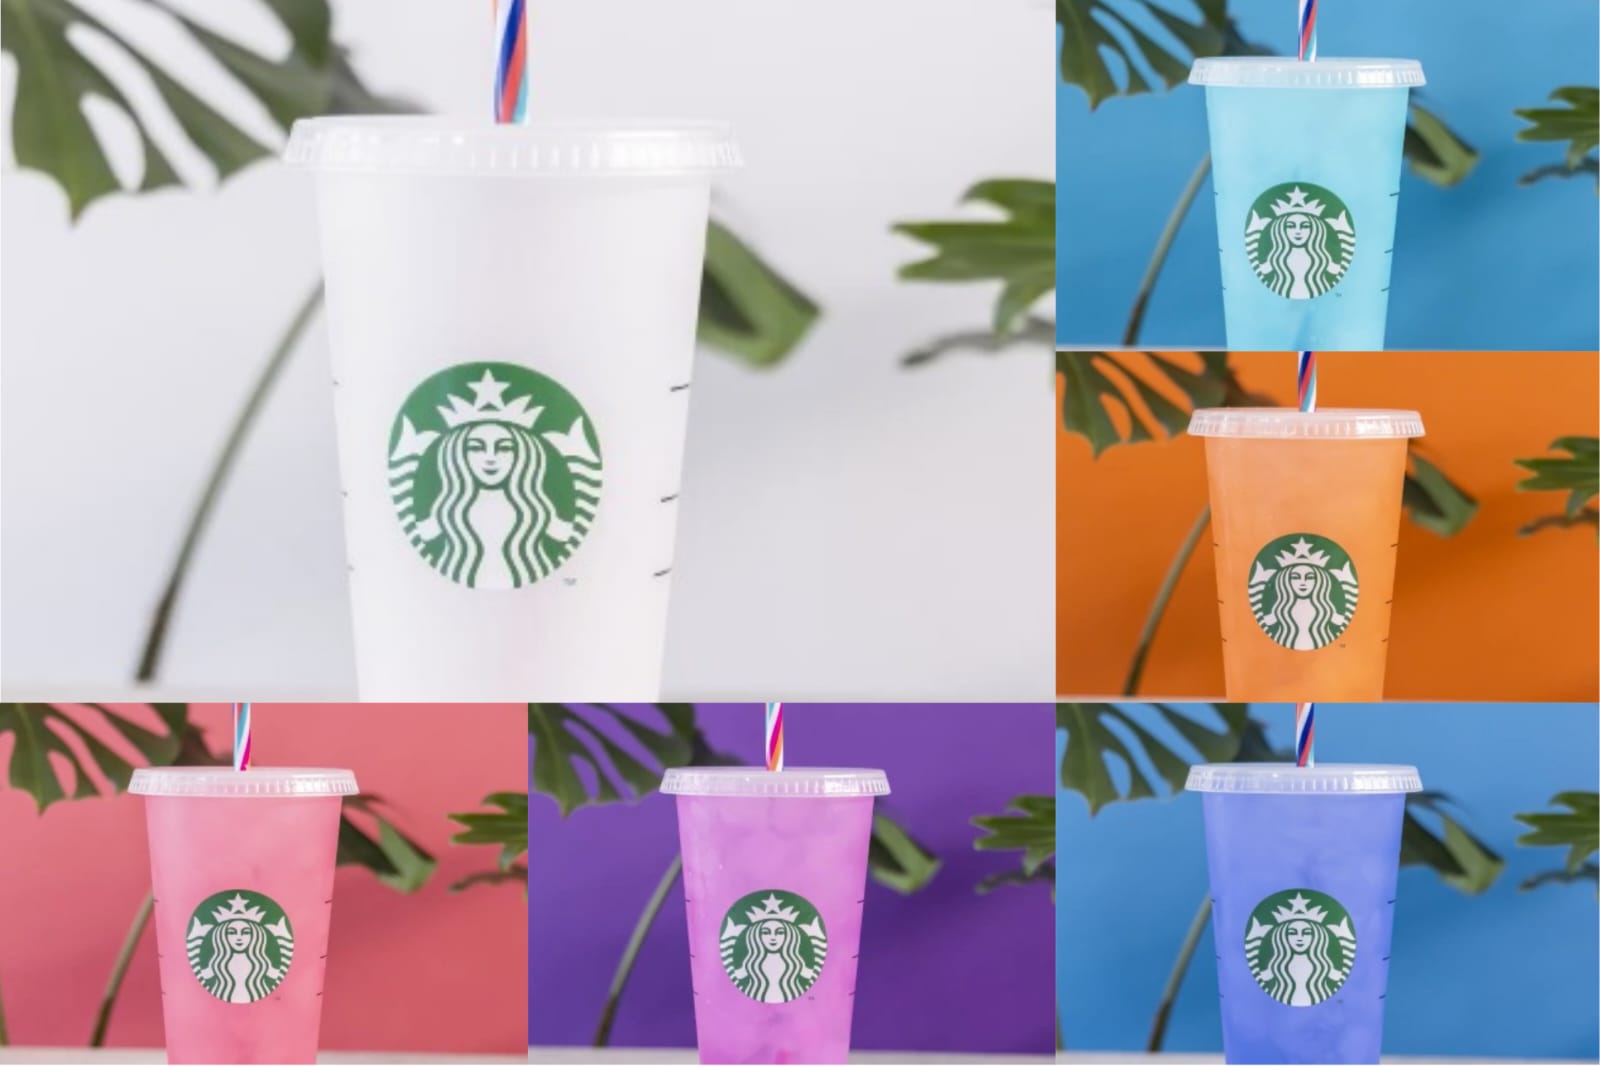 Descubre el nuevo vaso reusable de Starbucks, inspirado en Día de Muertos